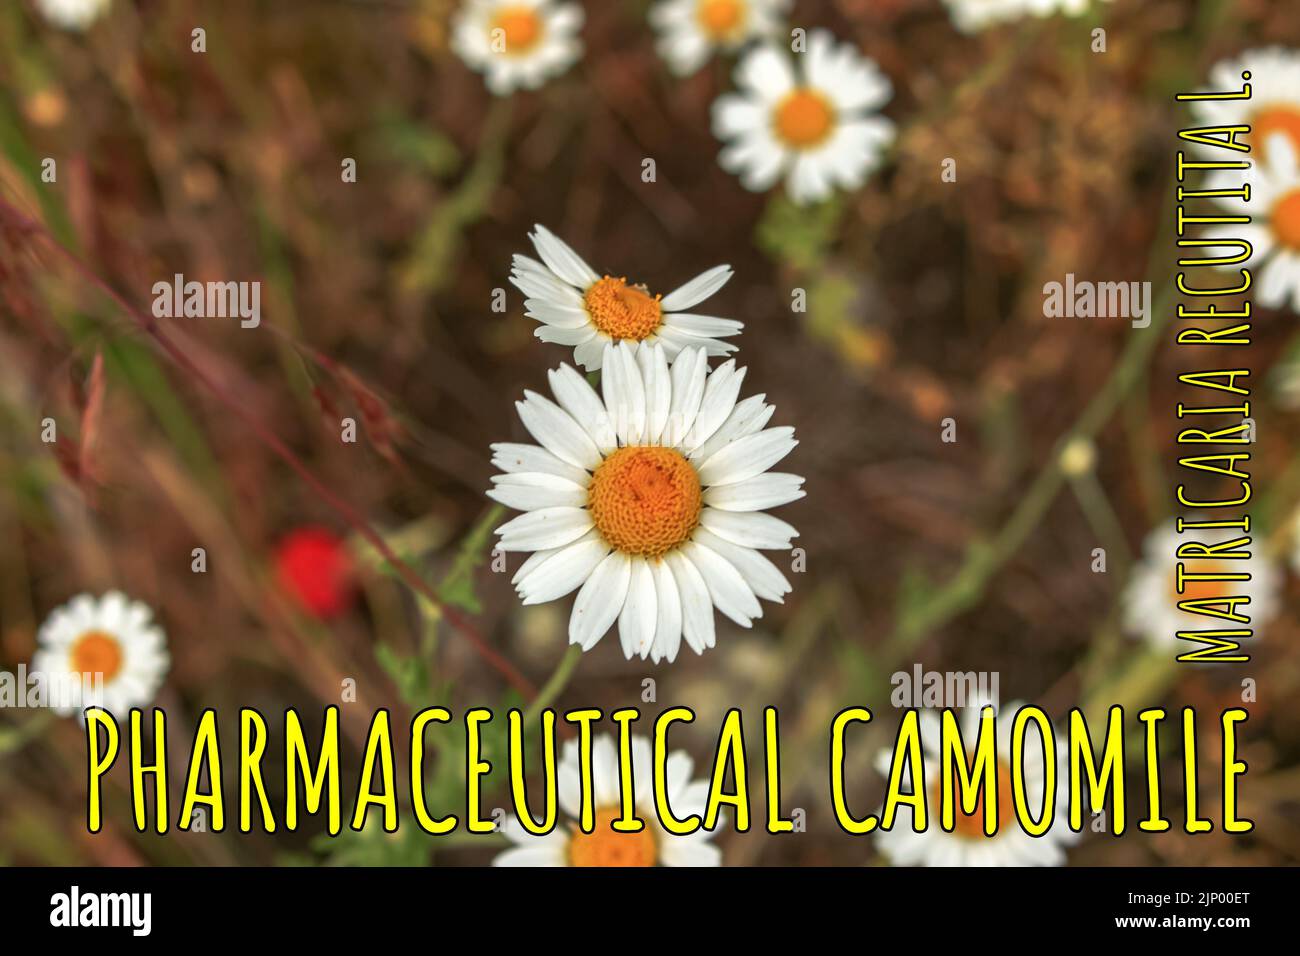 Kamillenblüten MATRICARIA RECUTITA L. Pharmazeutische Kamille. Heilpflanze Kamille, blühend. Stockfoto